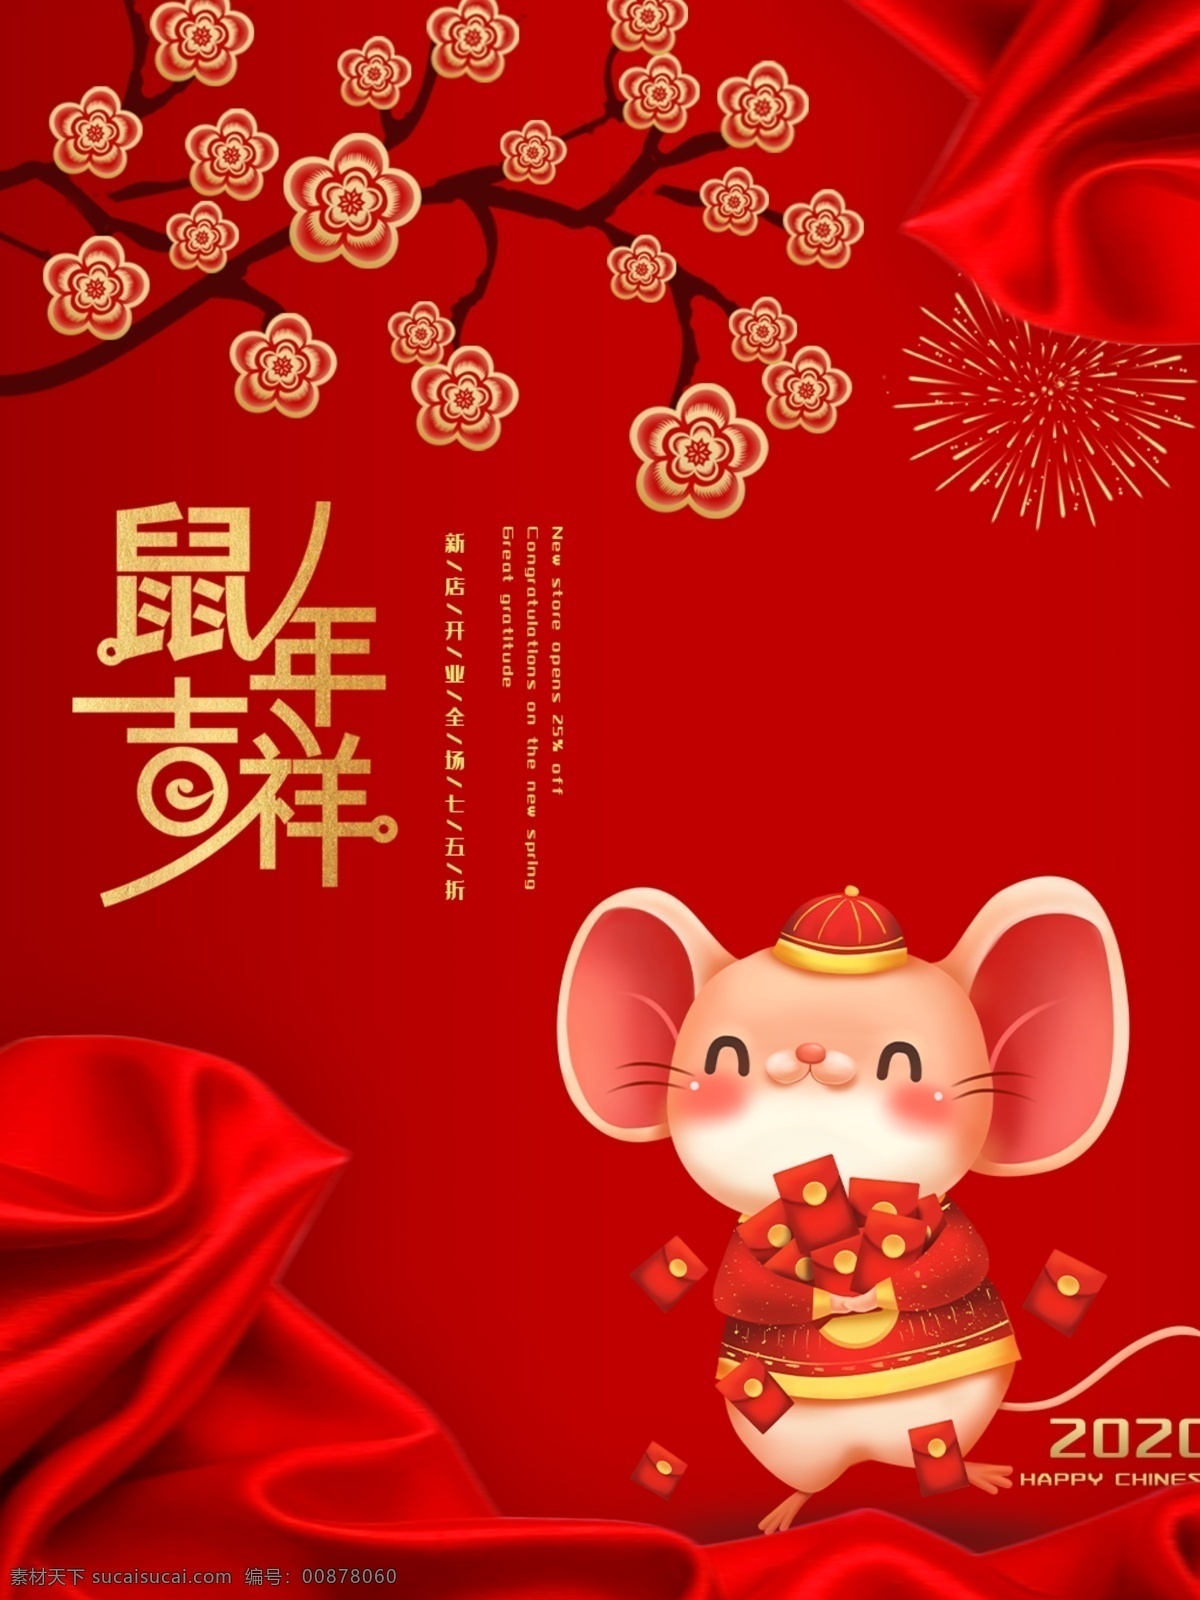 鼠年 新年 活动 海报 模版